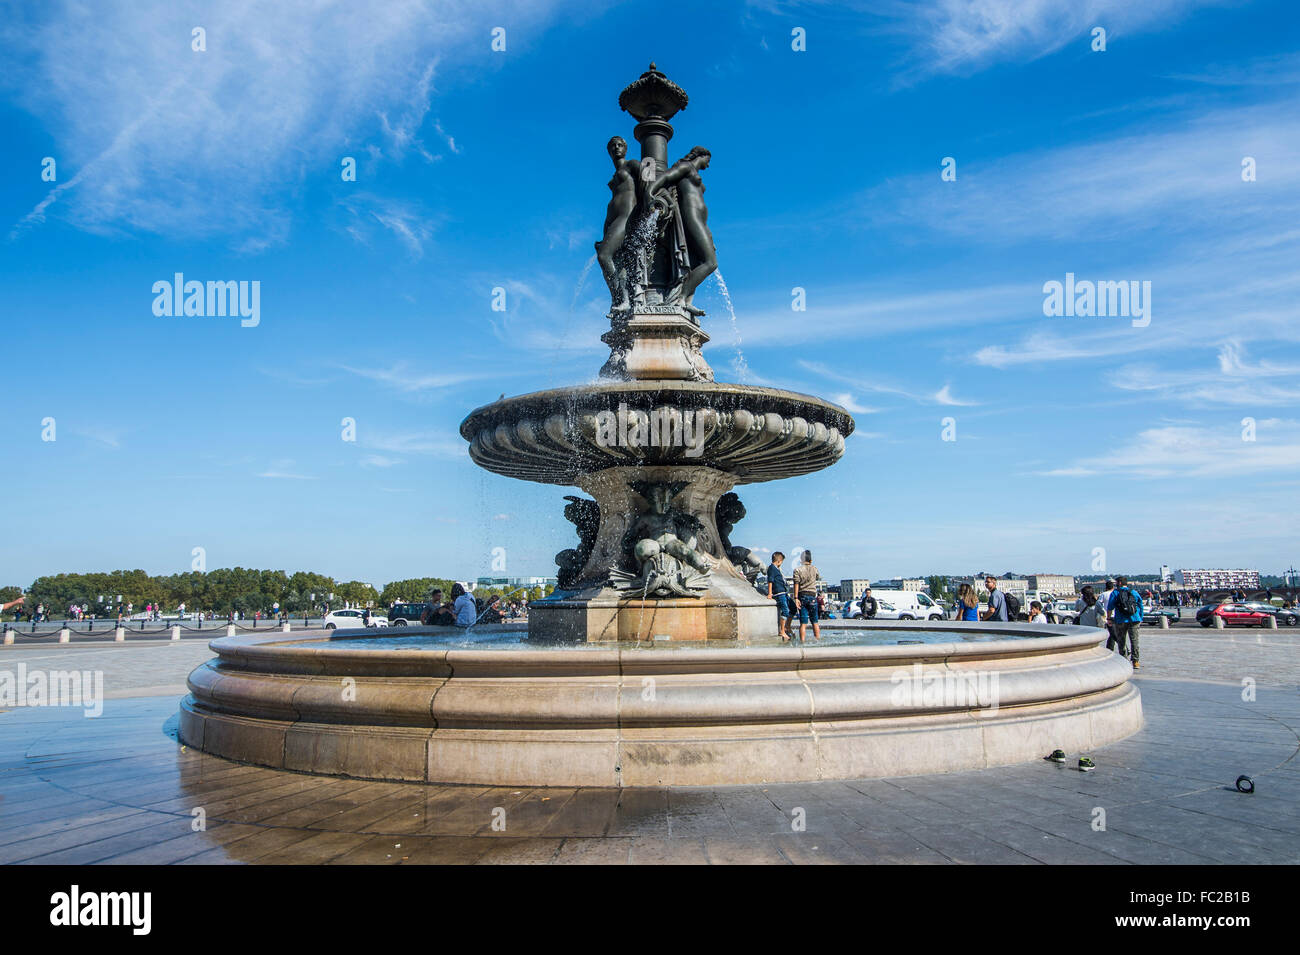 Fountain on Place de la Bourse, Bordeaux, France Stock Photo